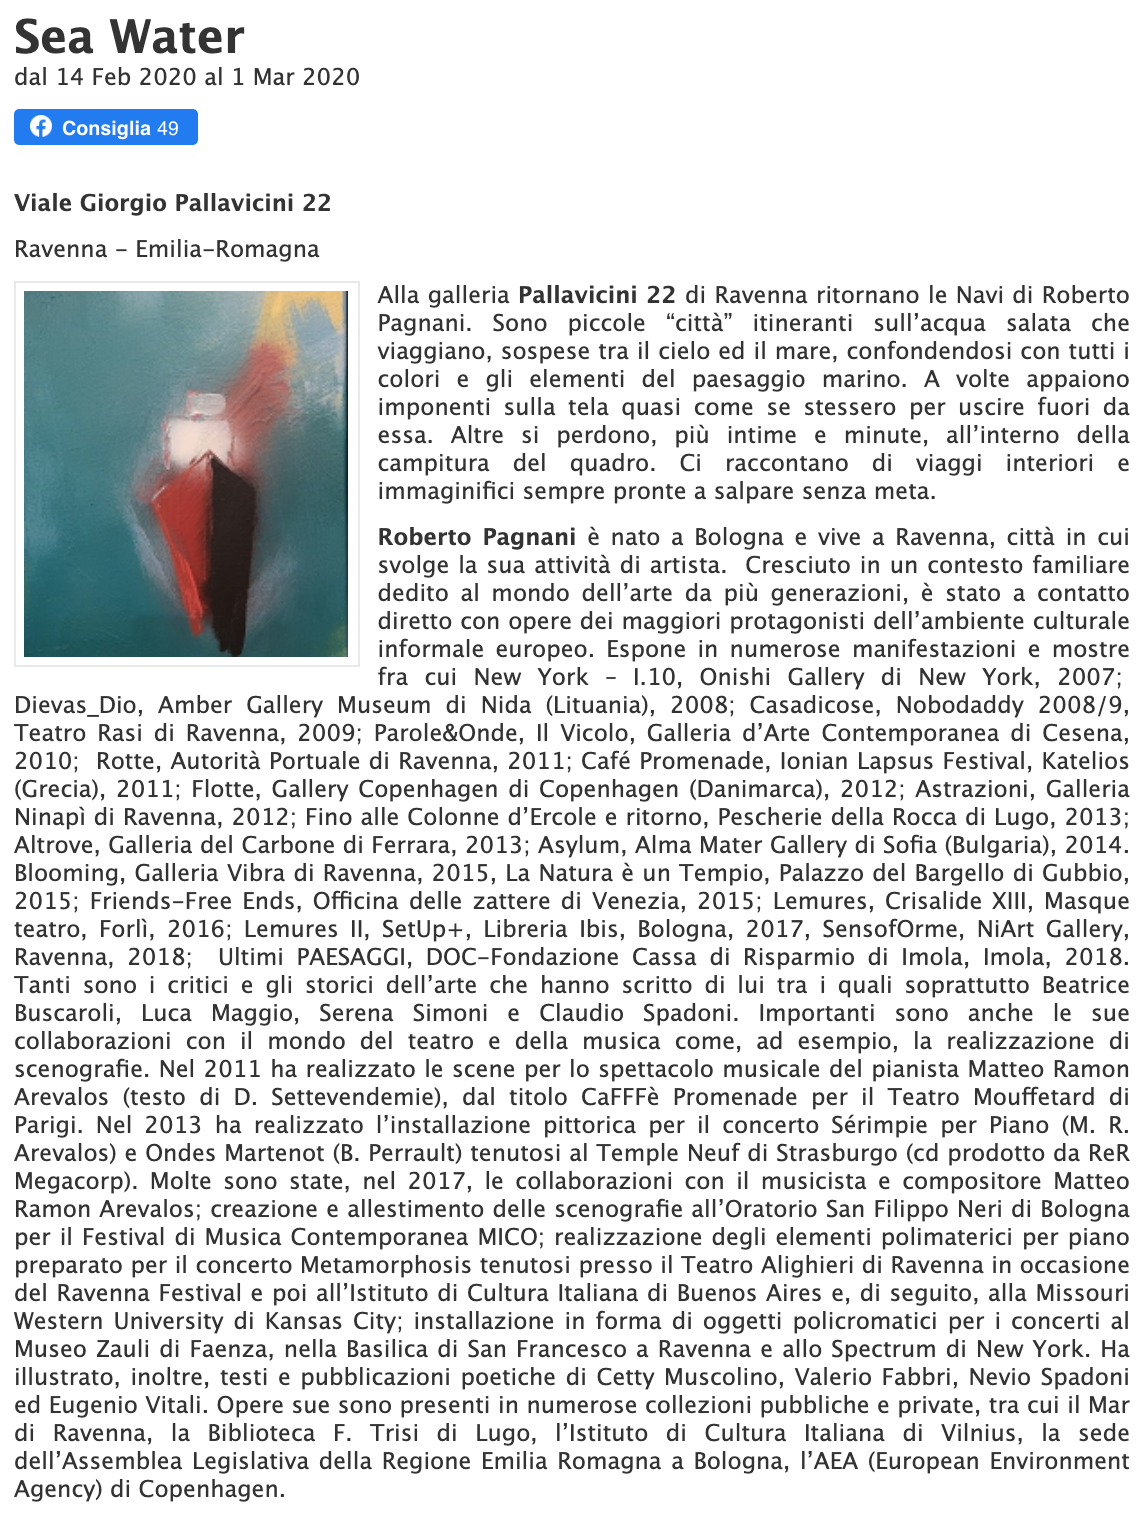 Sea Water di Roberto Pagnani su espressioneArte | Pallavicini22 spazio espositivo Ravenna